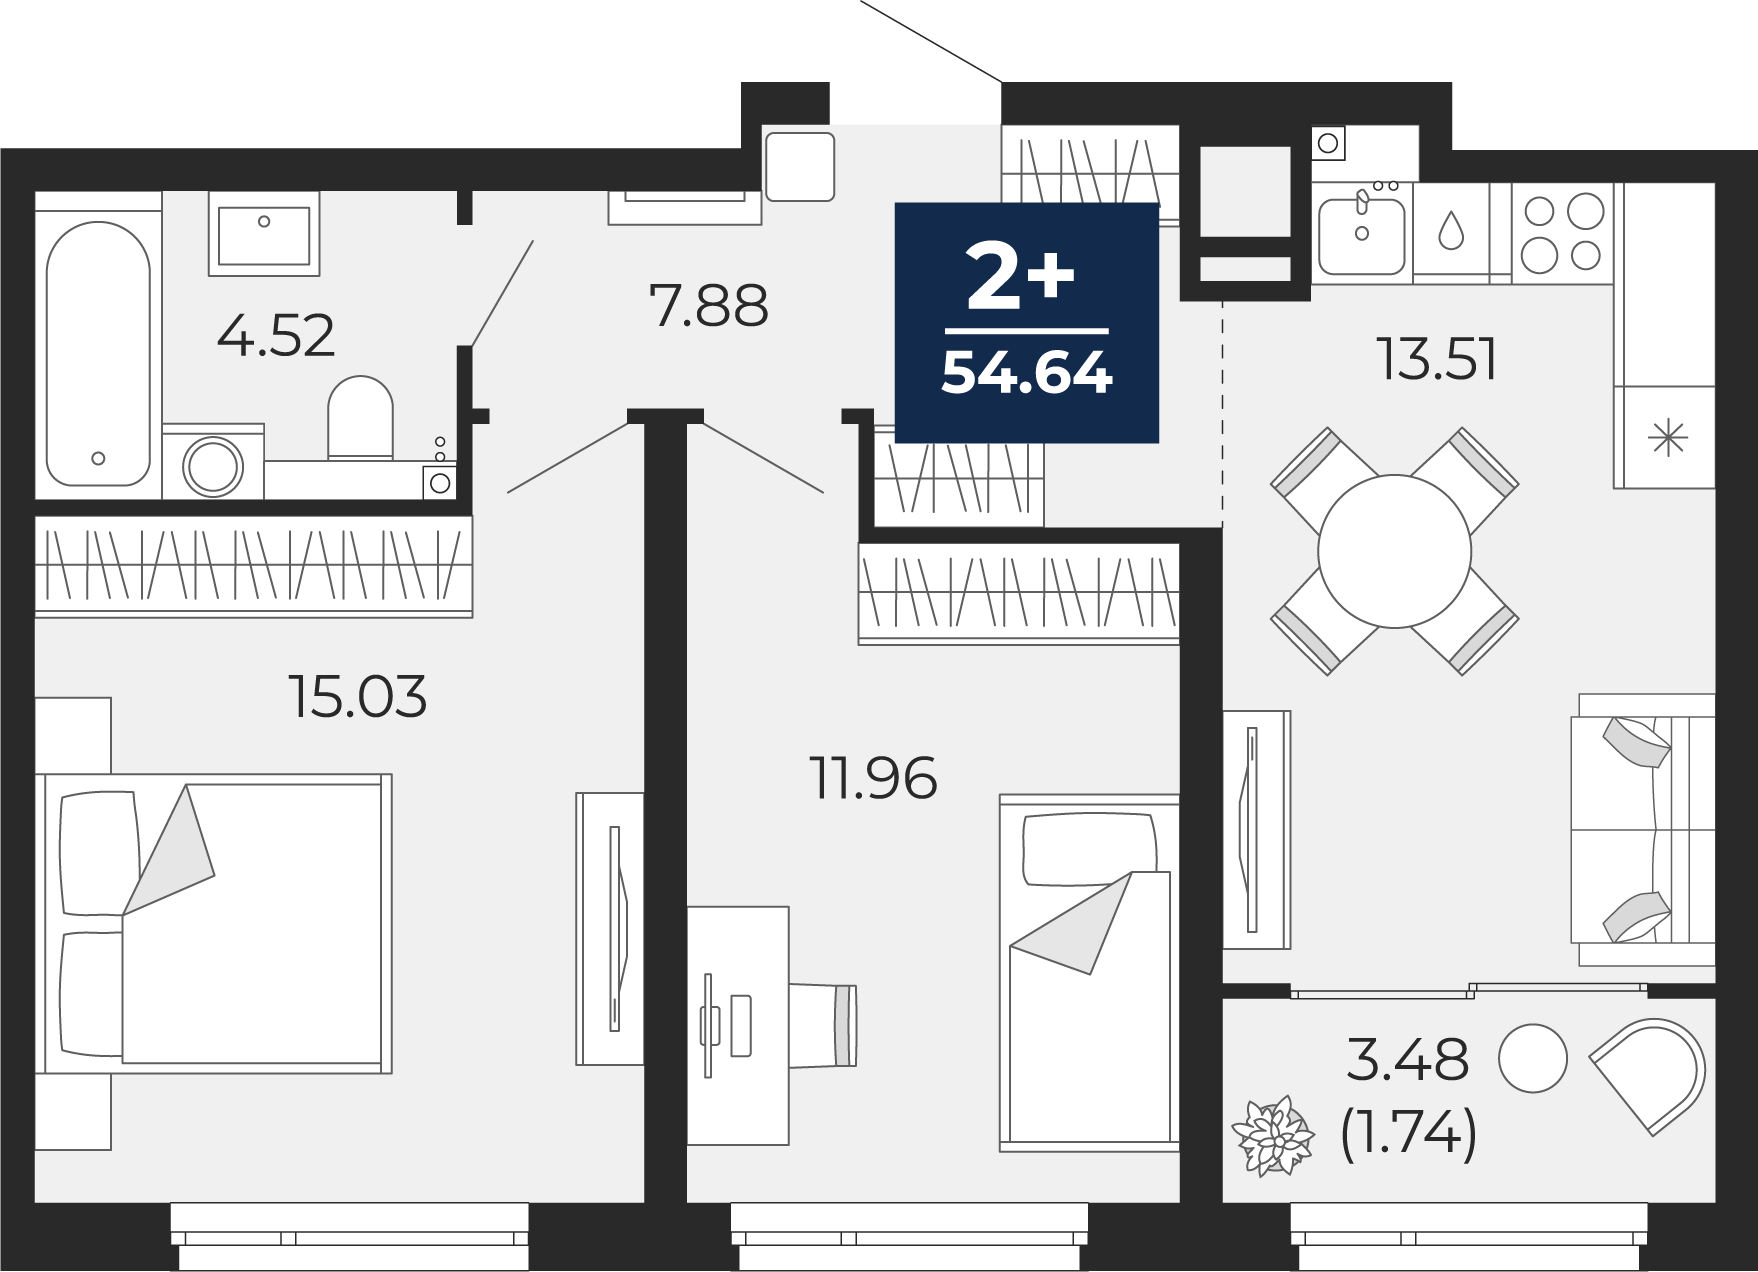 Квартира № 207, 2-комнатная, 54.64 кв. м, 10 этаж